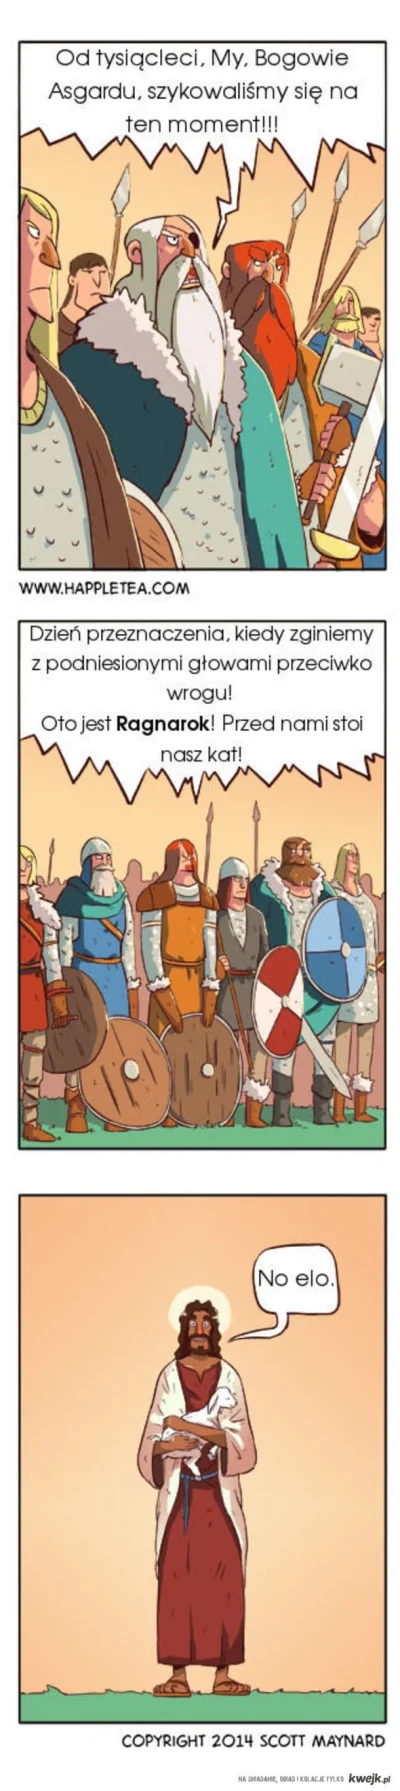 karolgrabowski93 - #wikingowie #asgard #ragnarok #kwejkaledobre #heheszki #jezus